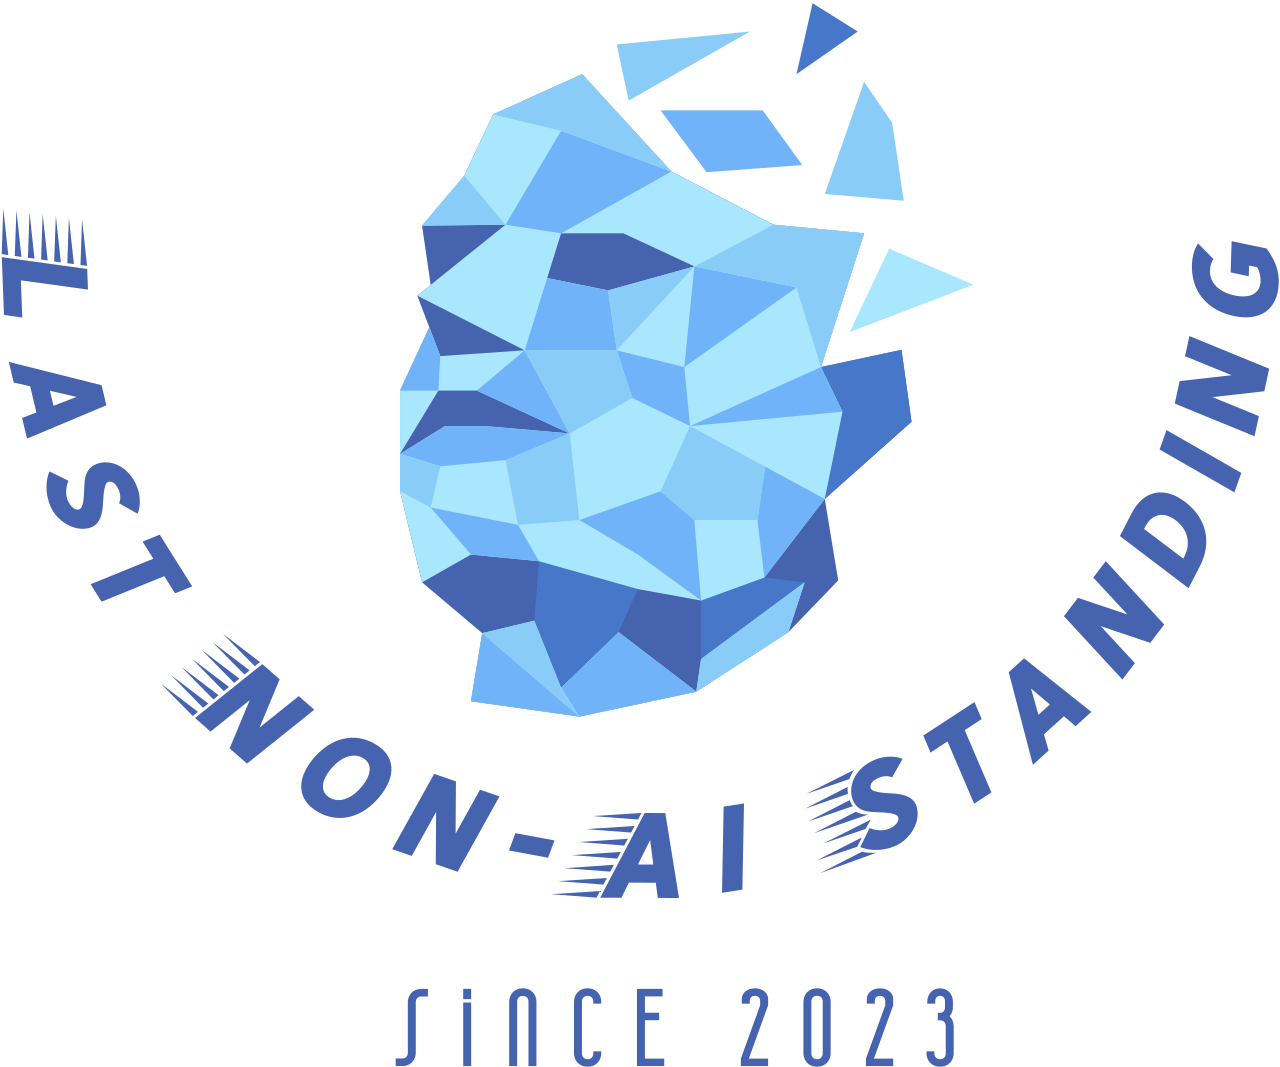 Last Non-Ai Standing's logo